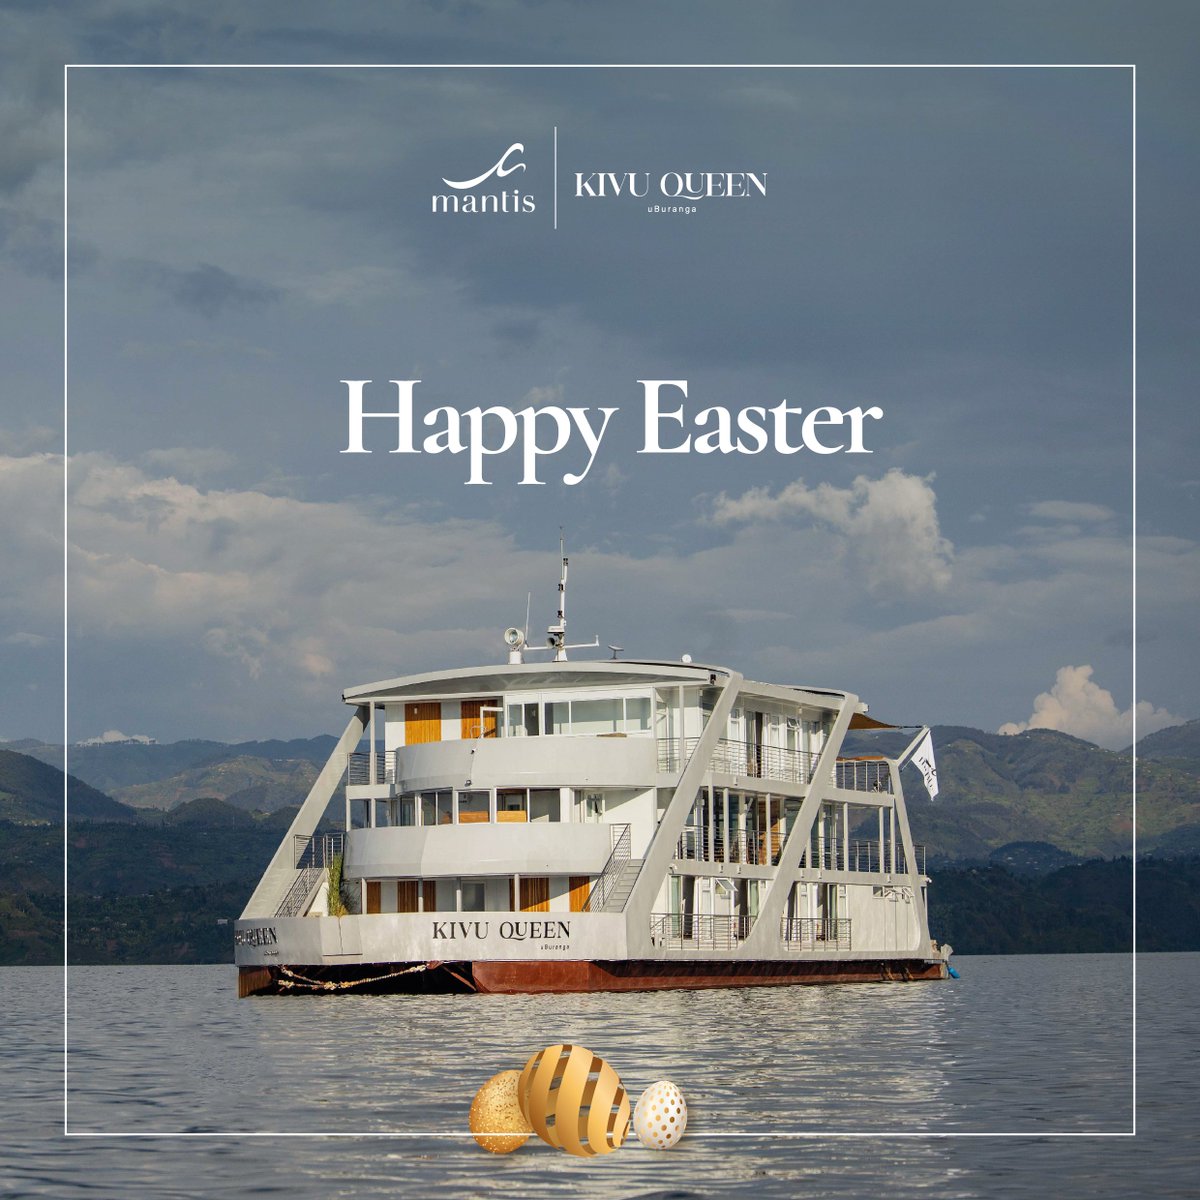 Wishing you a delightful Easter celebration! #SailInStyle I #VisitRwanda🇷🇼